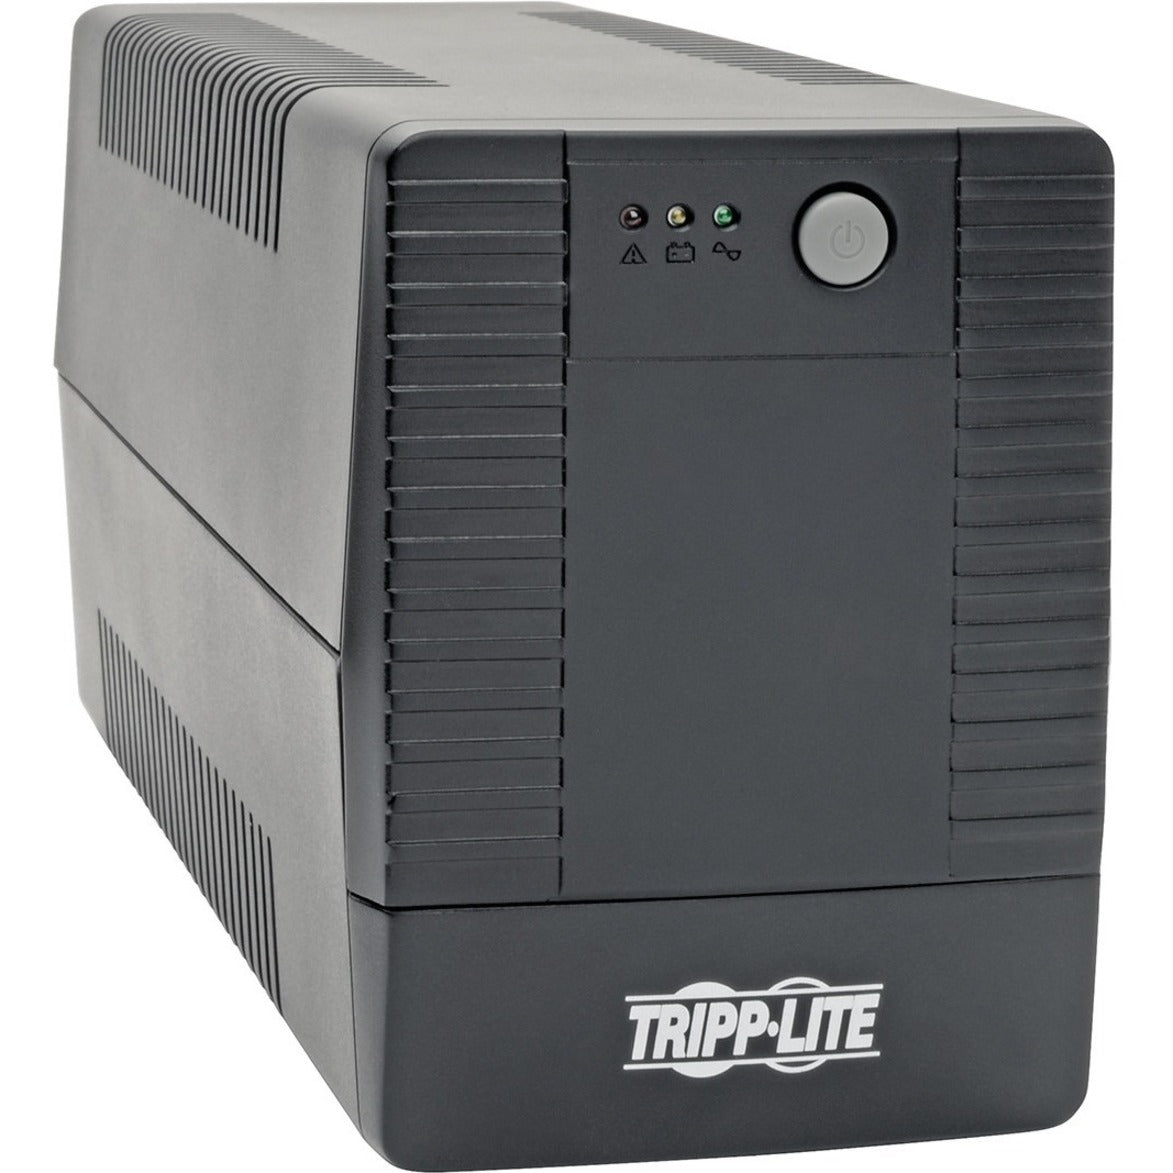 Tripp Lite BC600TU 600VA Desktop UPS, Line-interactive UPS, 120V AC, 360W, USB Port, LED Indicators